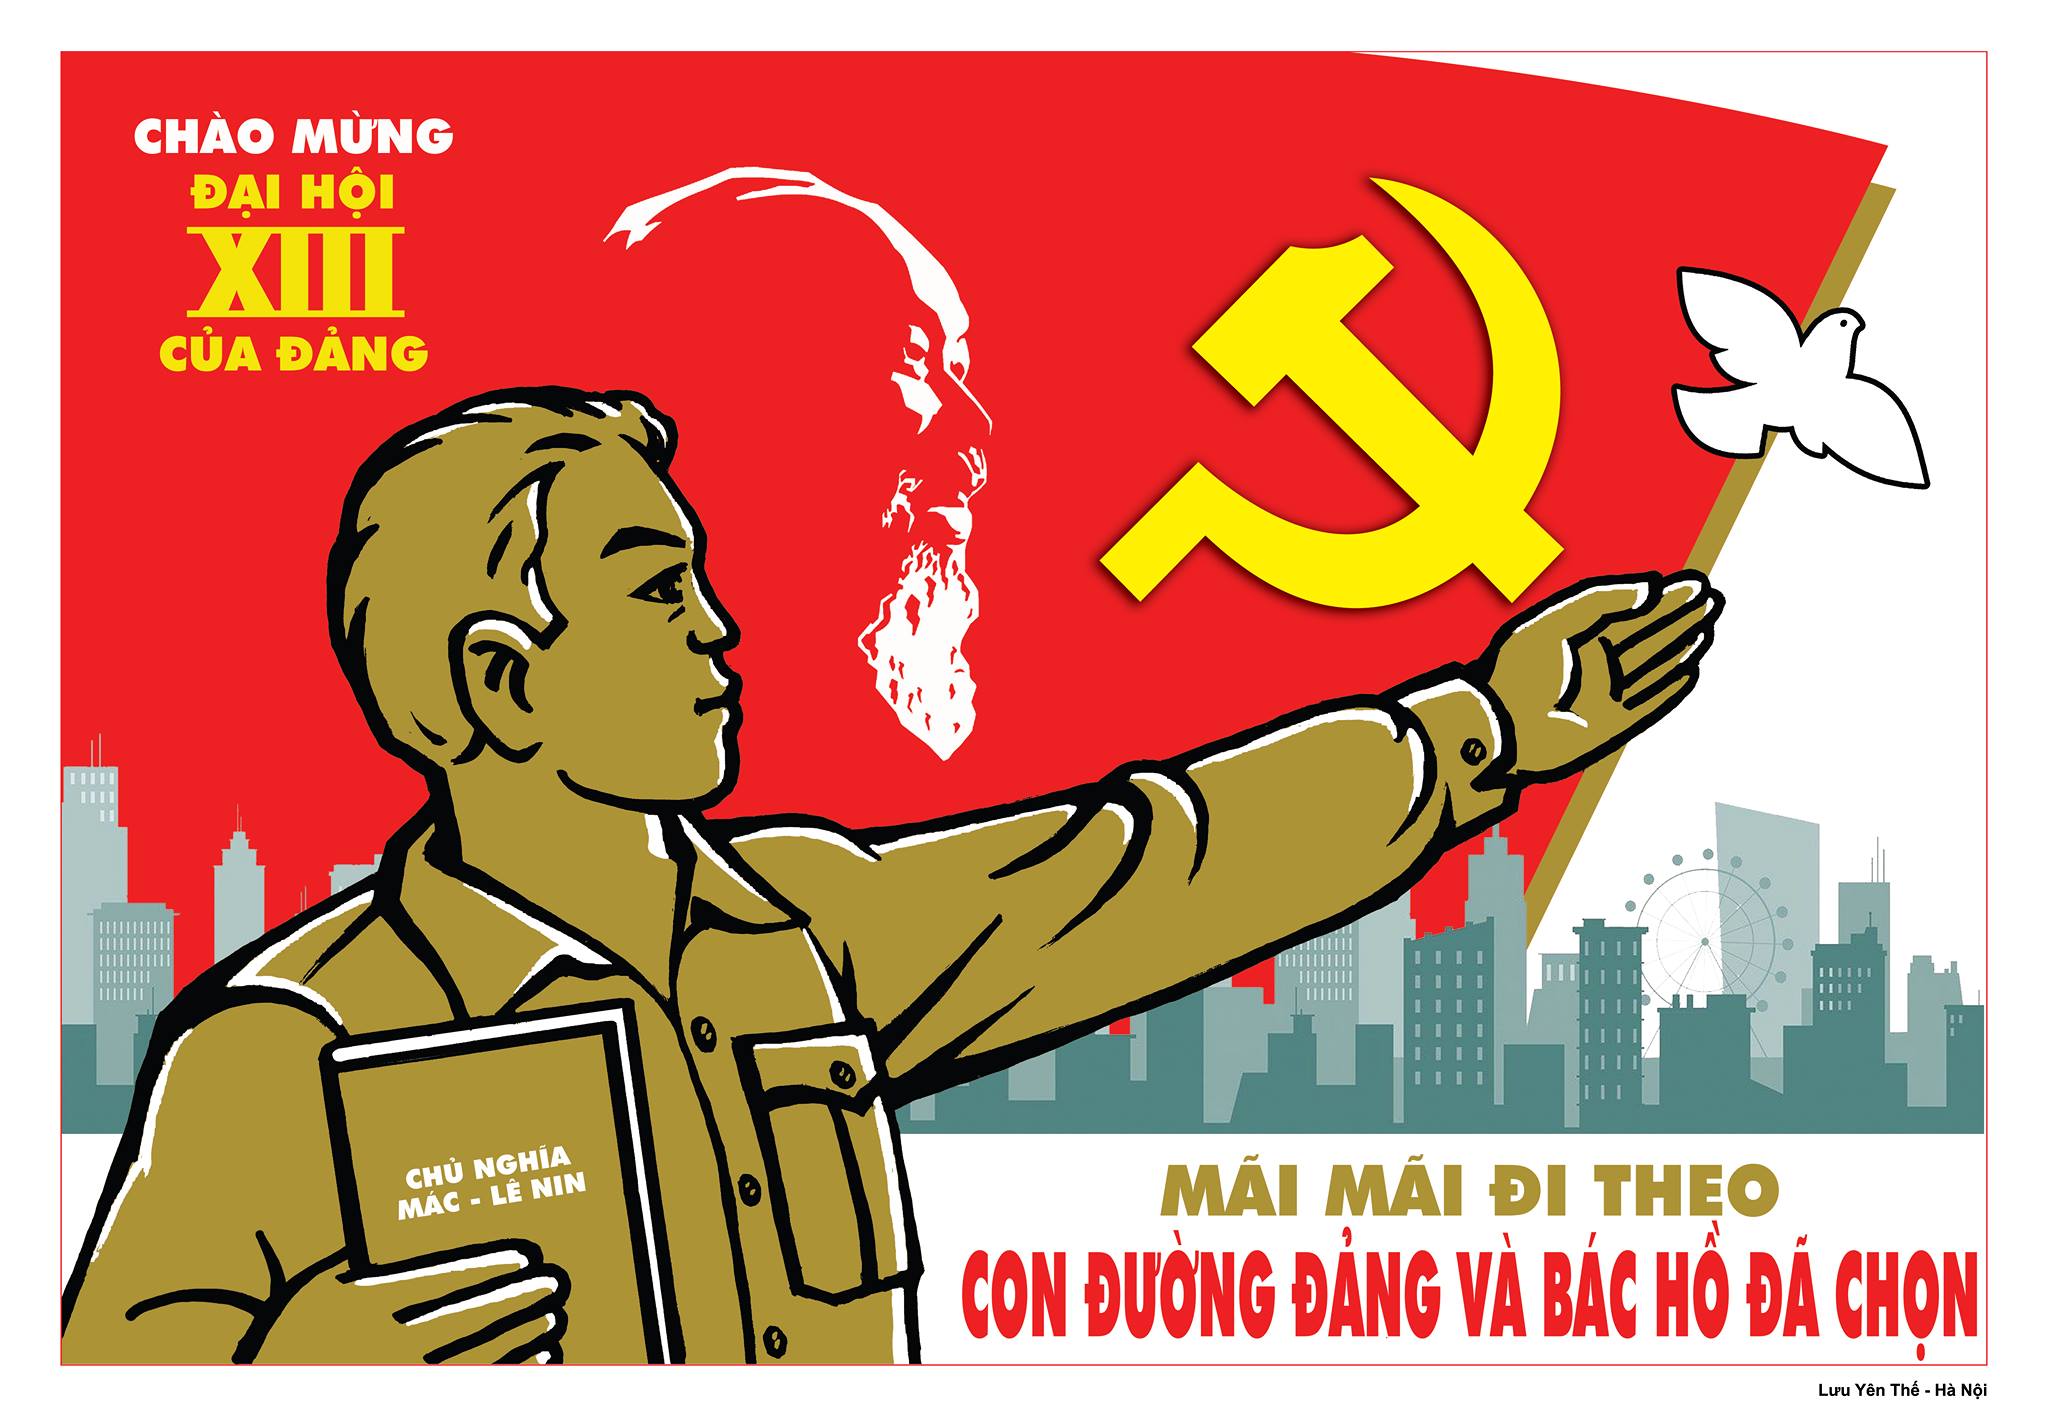 1587 délégués assisteront au XIIIème Congrès du Parti Communiste du Viêt Nam